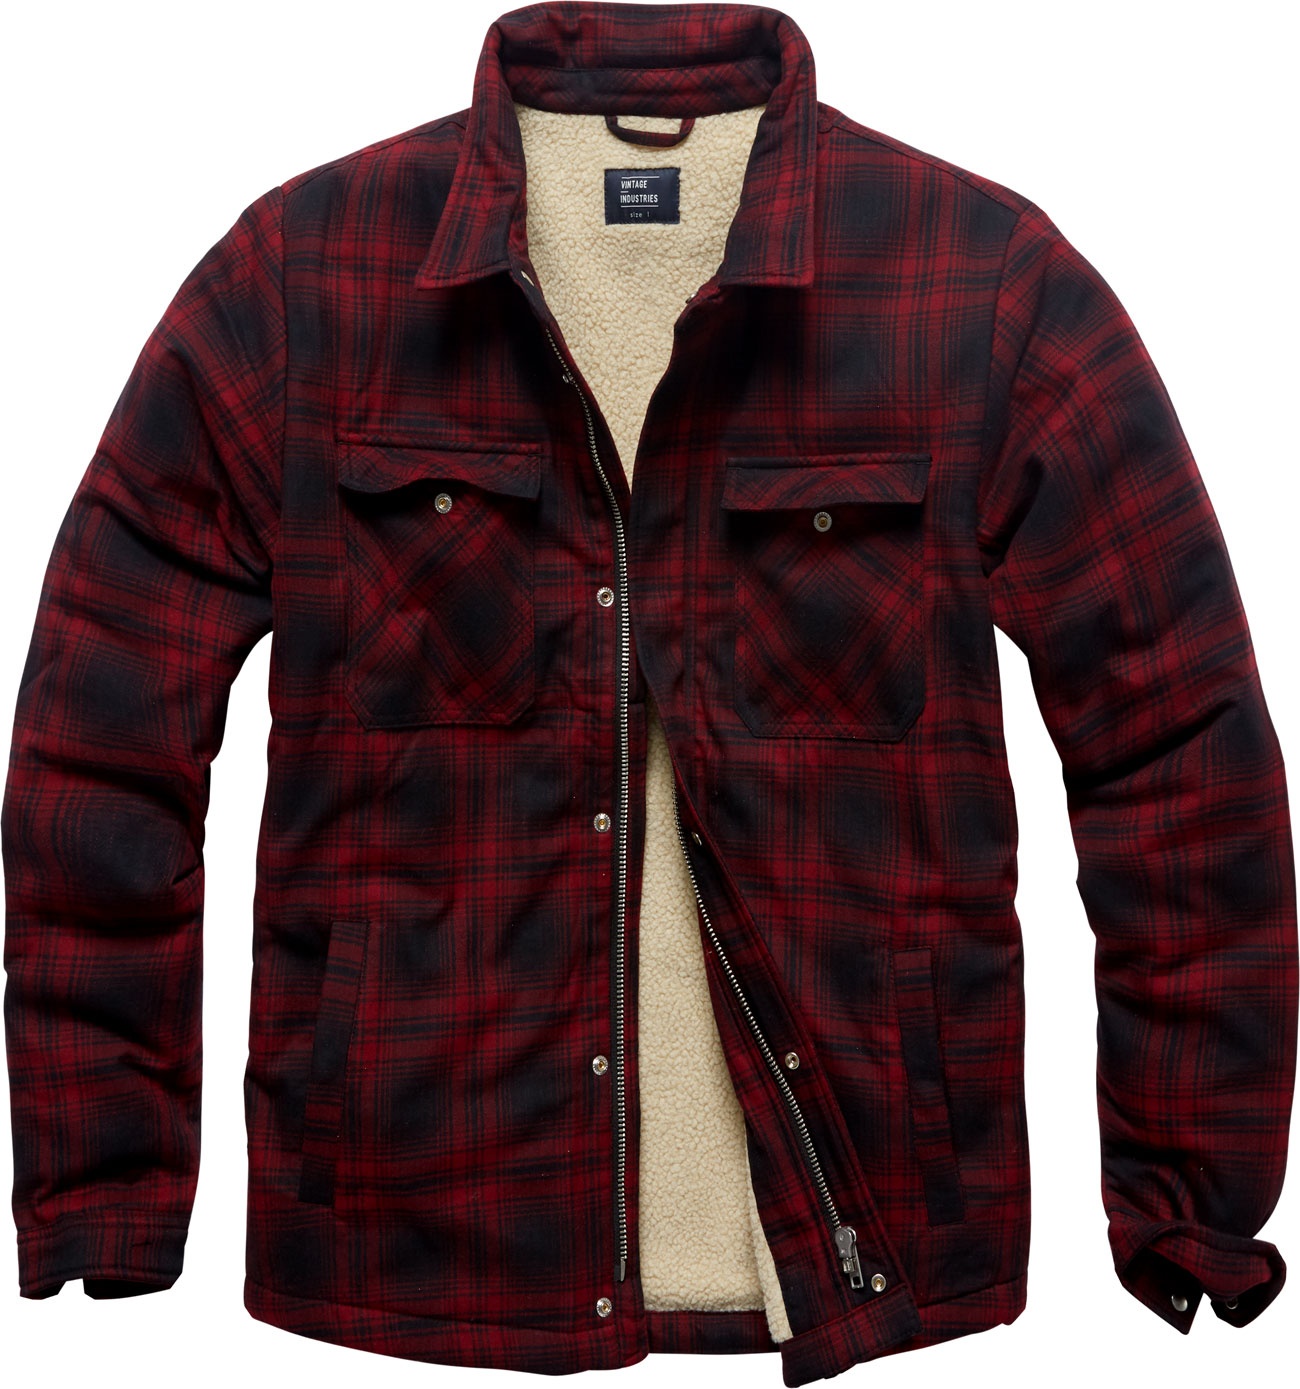 Vintage Industries Class Sherpa, chemise/veste textile - Rouge Foncé/Noir - M